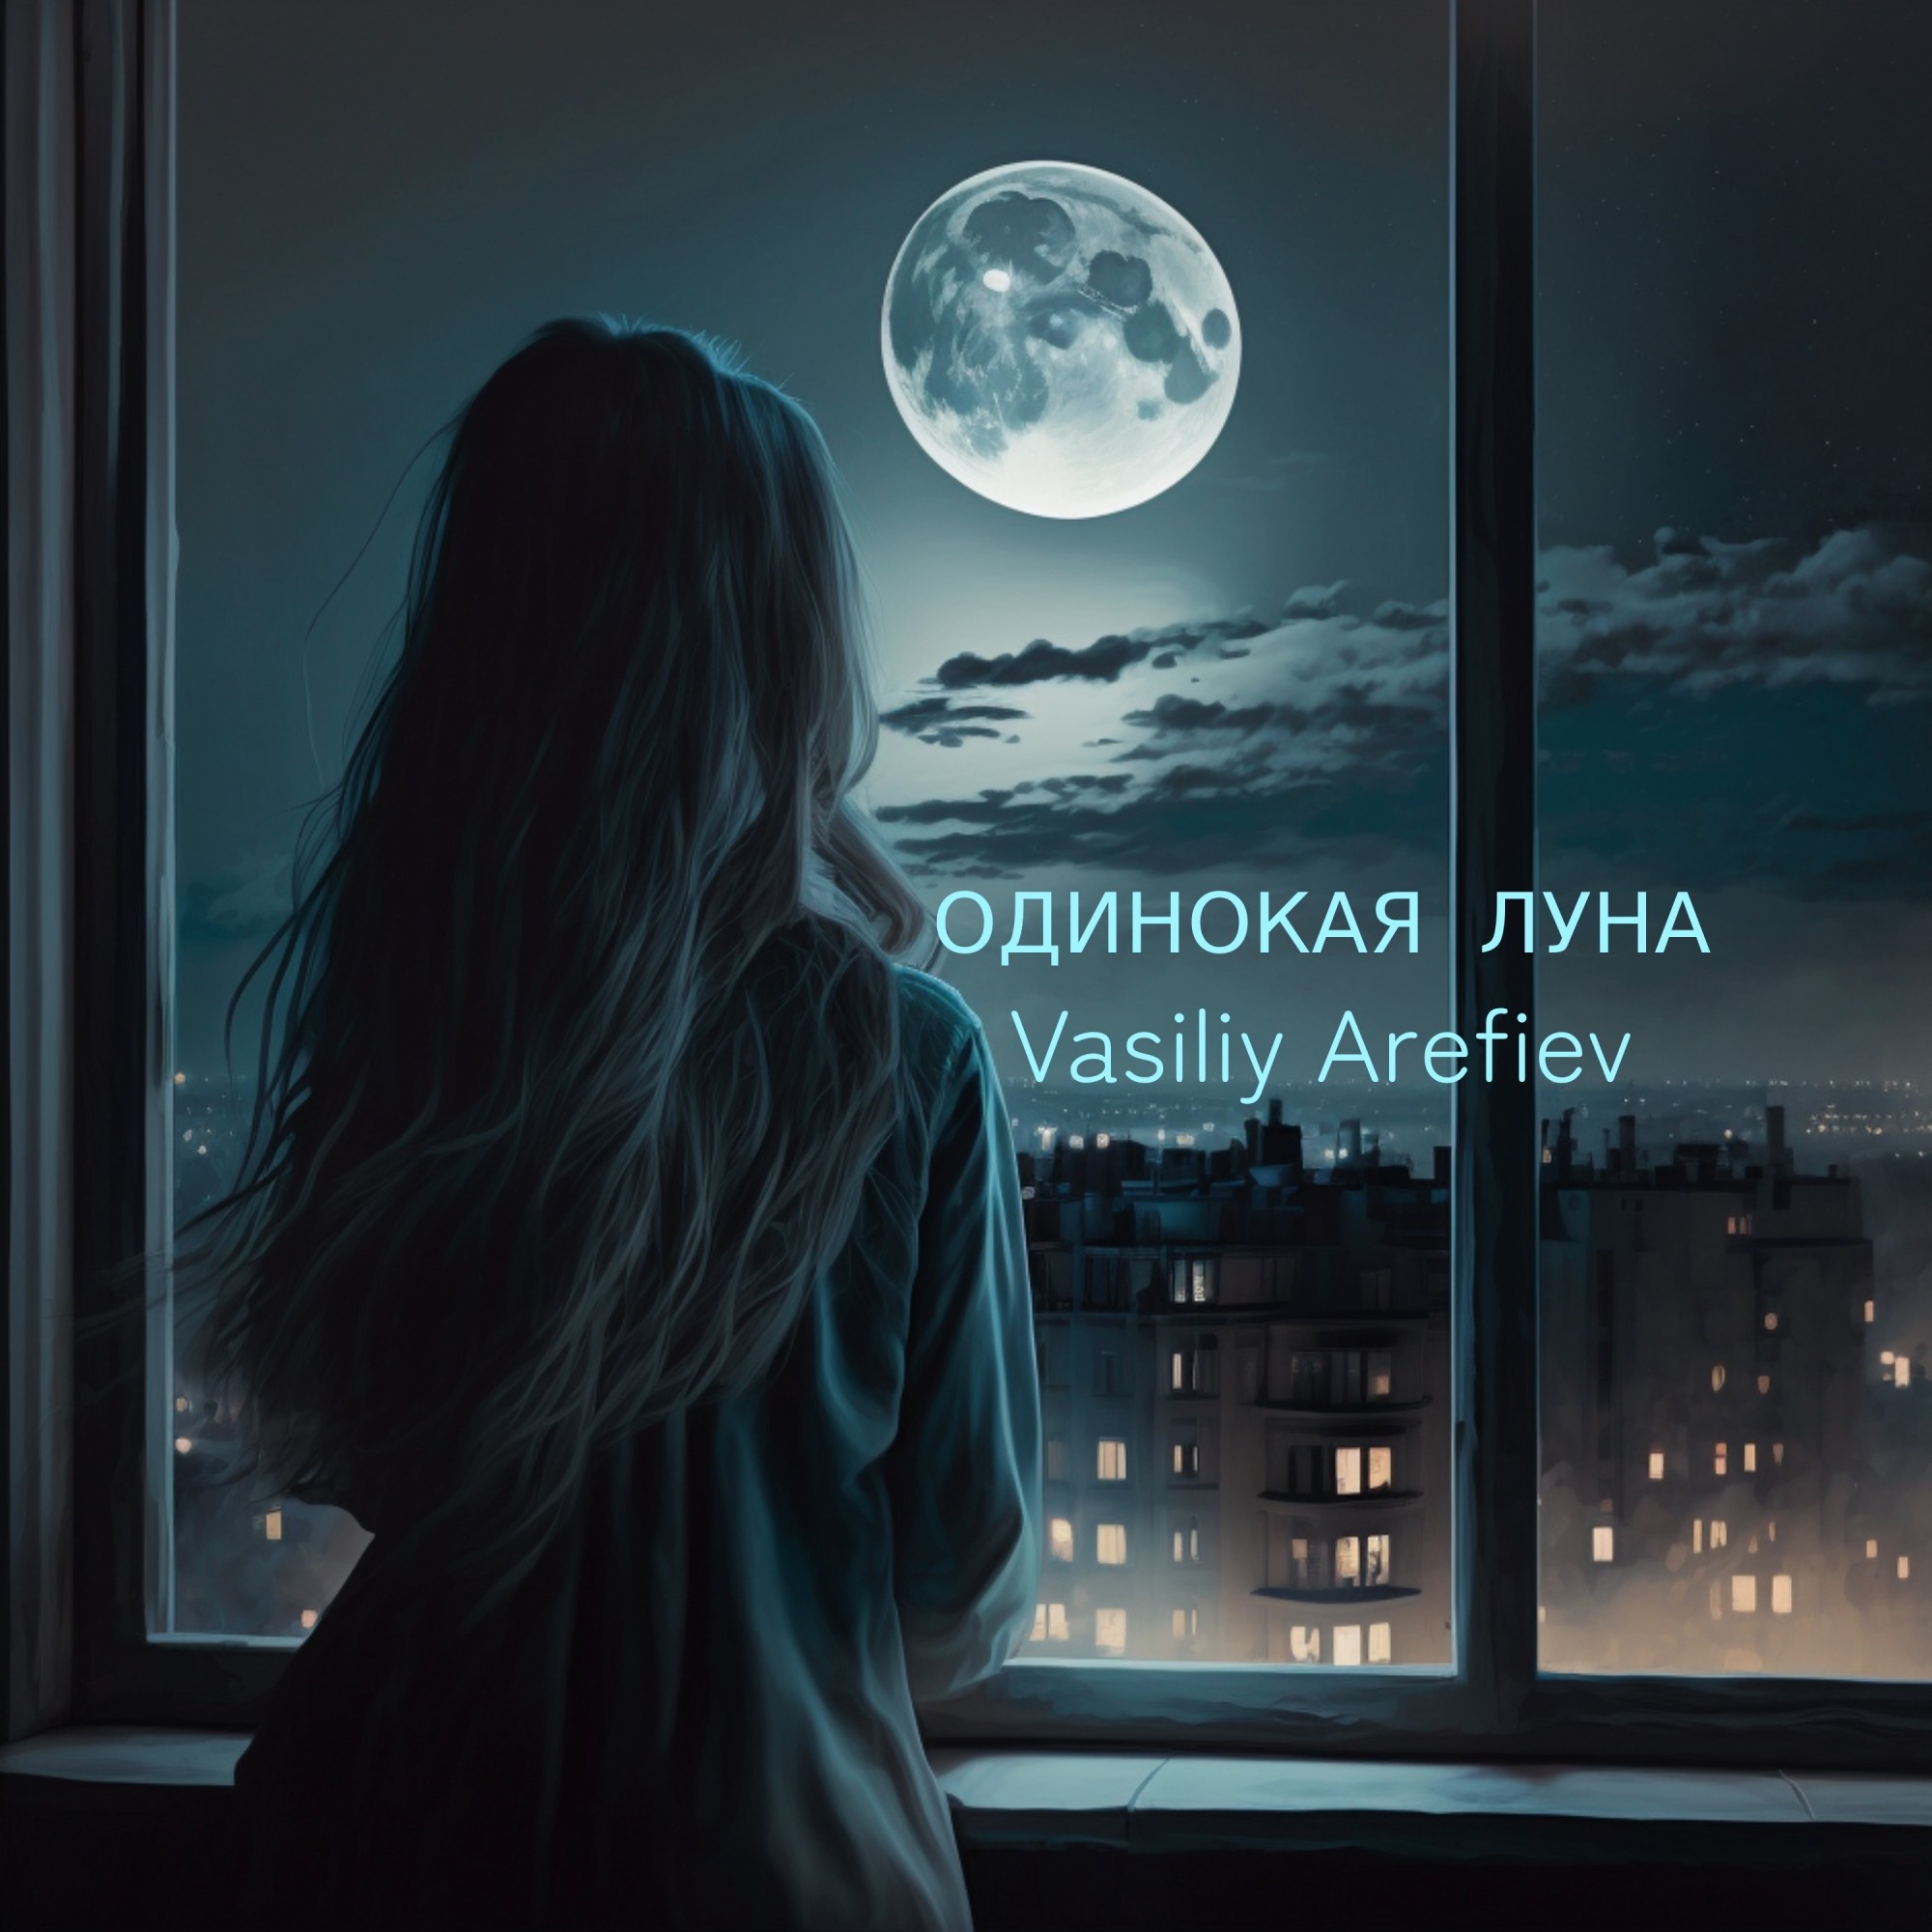 Розов одинокая луна. Одиночка Луна. Луна одиночество. Лунное одиночество. Одинокая Луна песня.